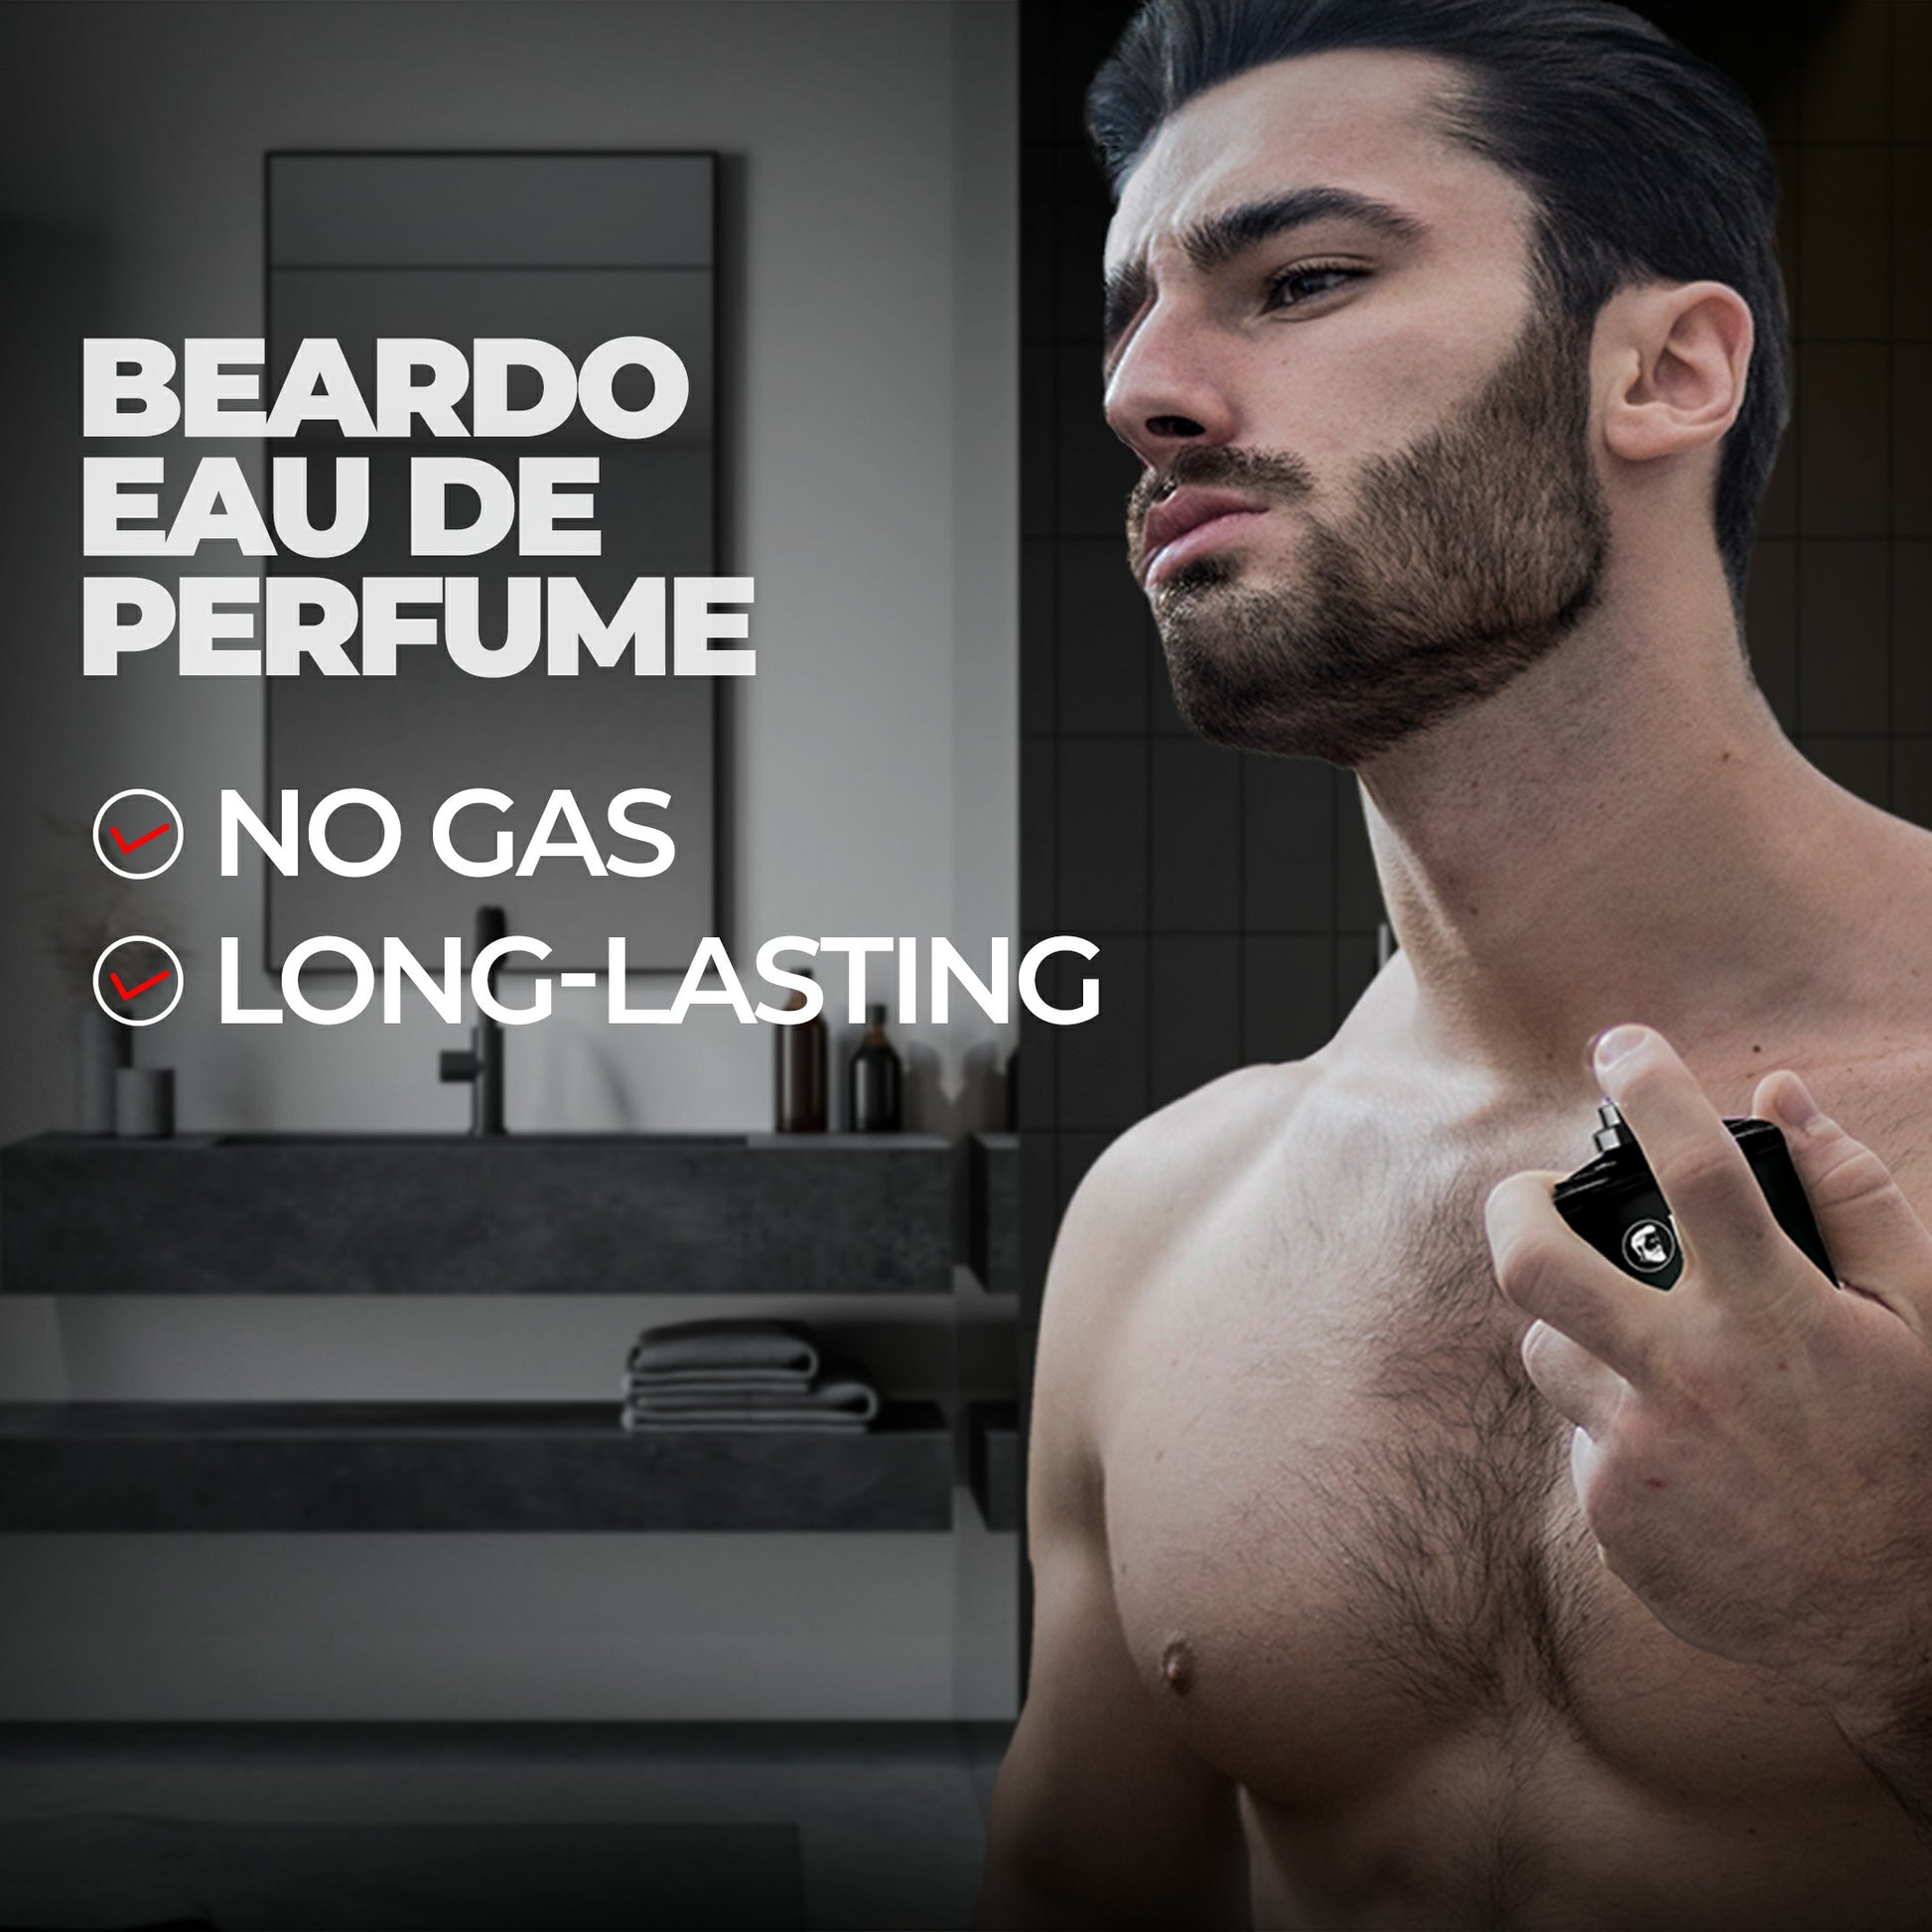 long lasting, Are Beardo perfumes long lasting?